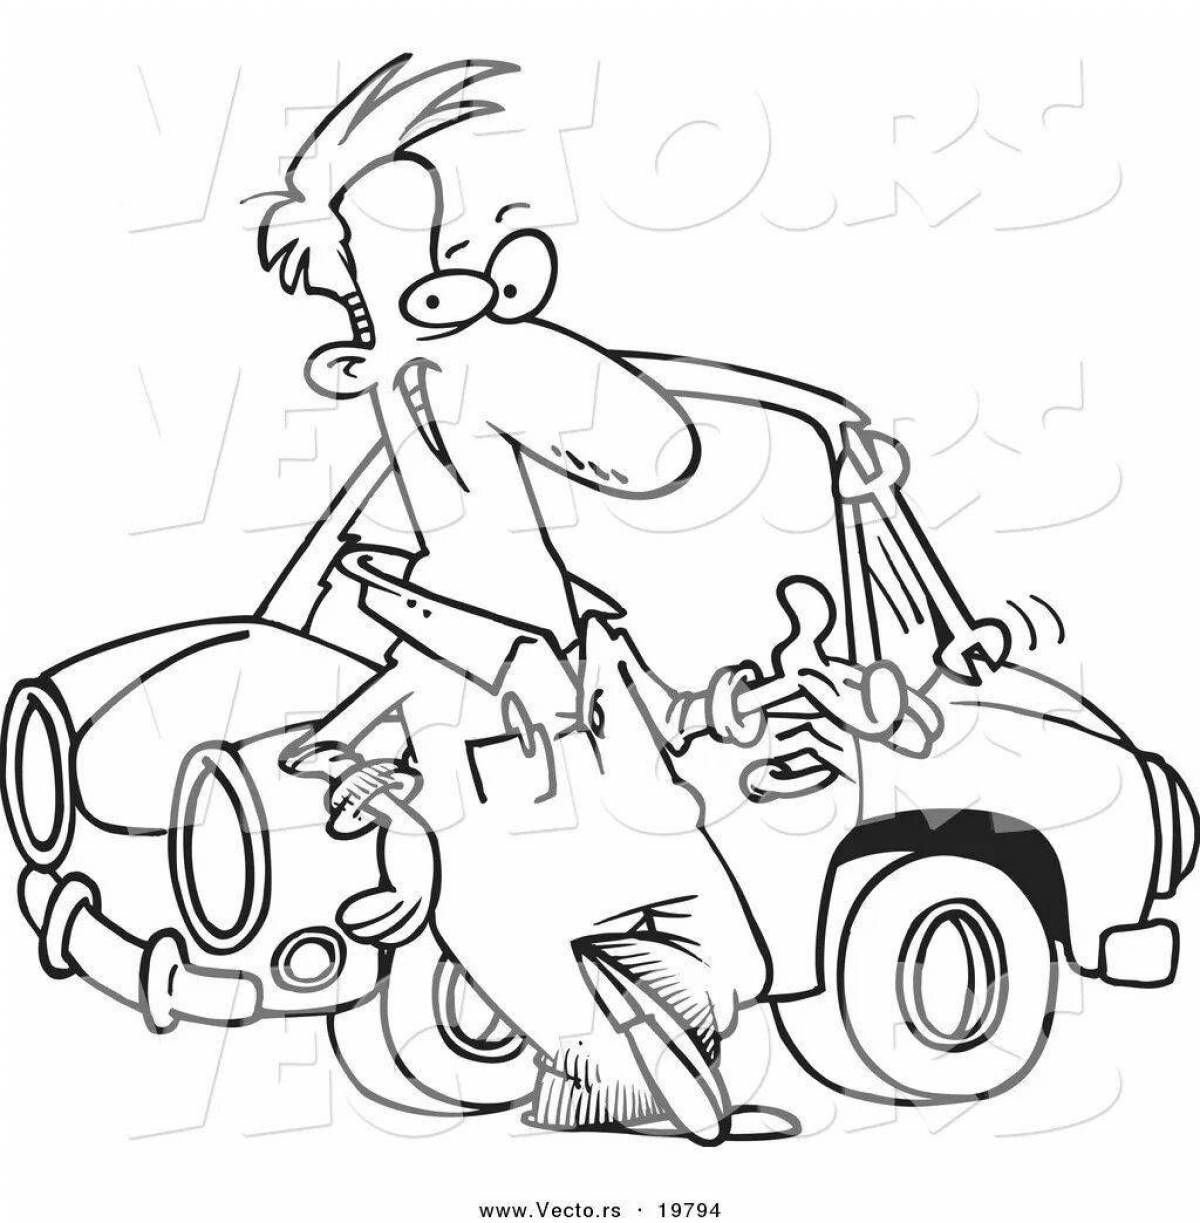 Рисунок на тему автомеханик